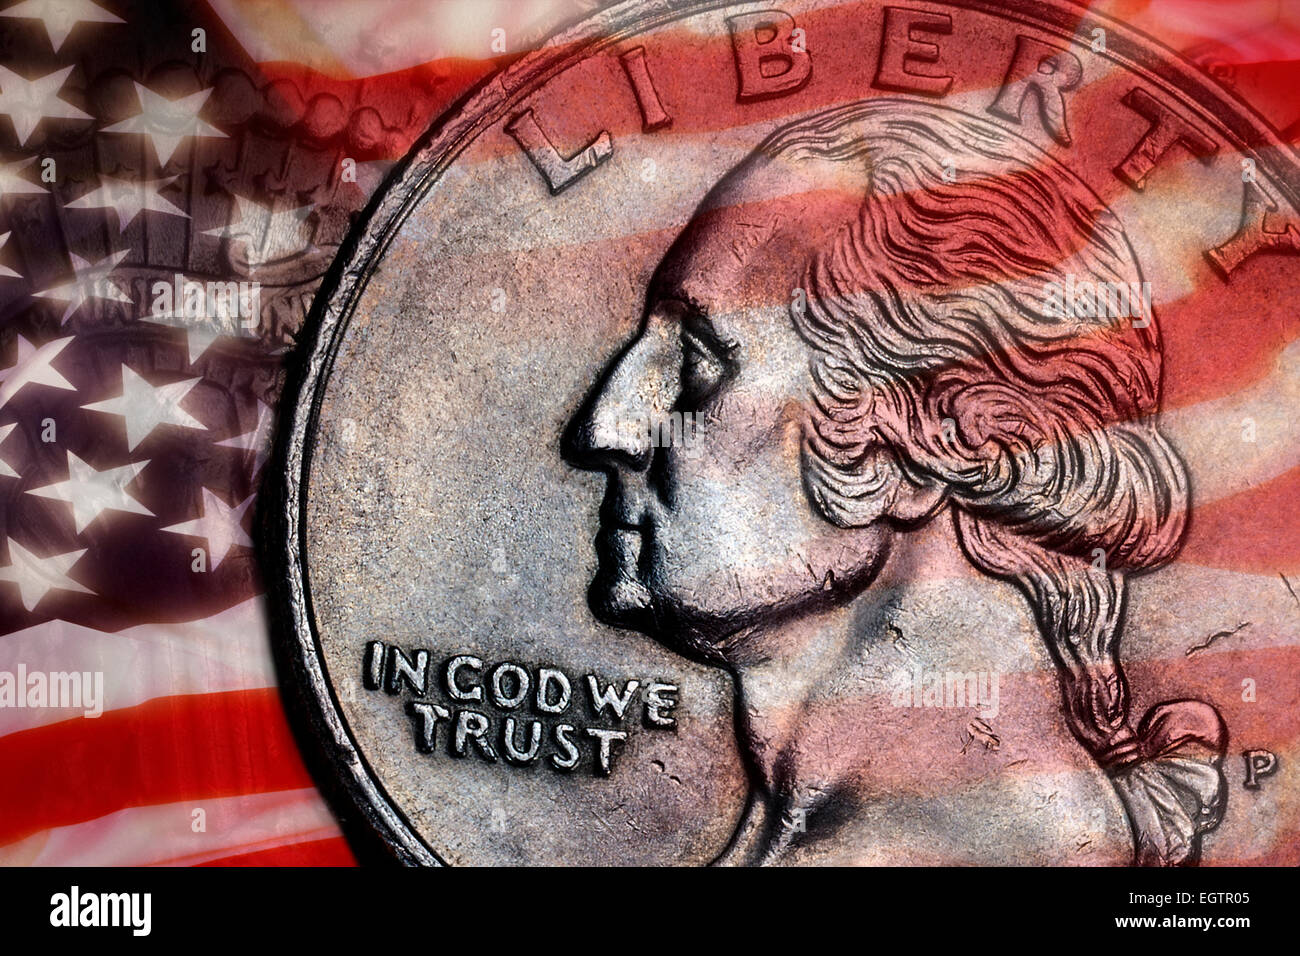 Close-up dettaglio su un Stati Uniti trimestre dollar coin - In God We Trust - Liberty. Foto Stock